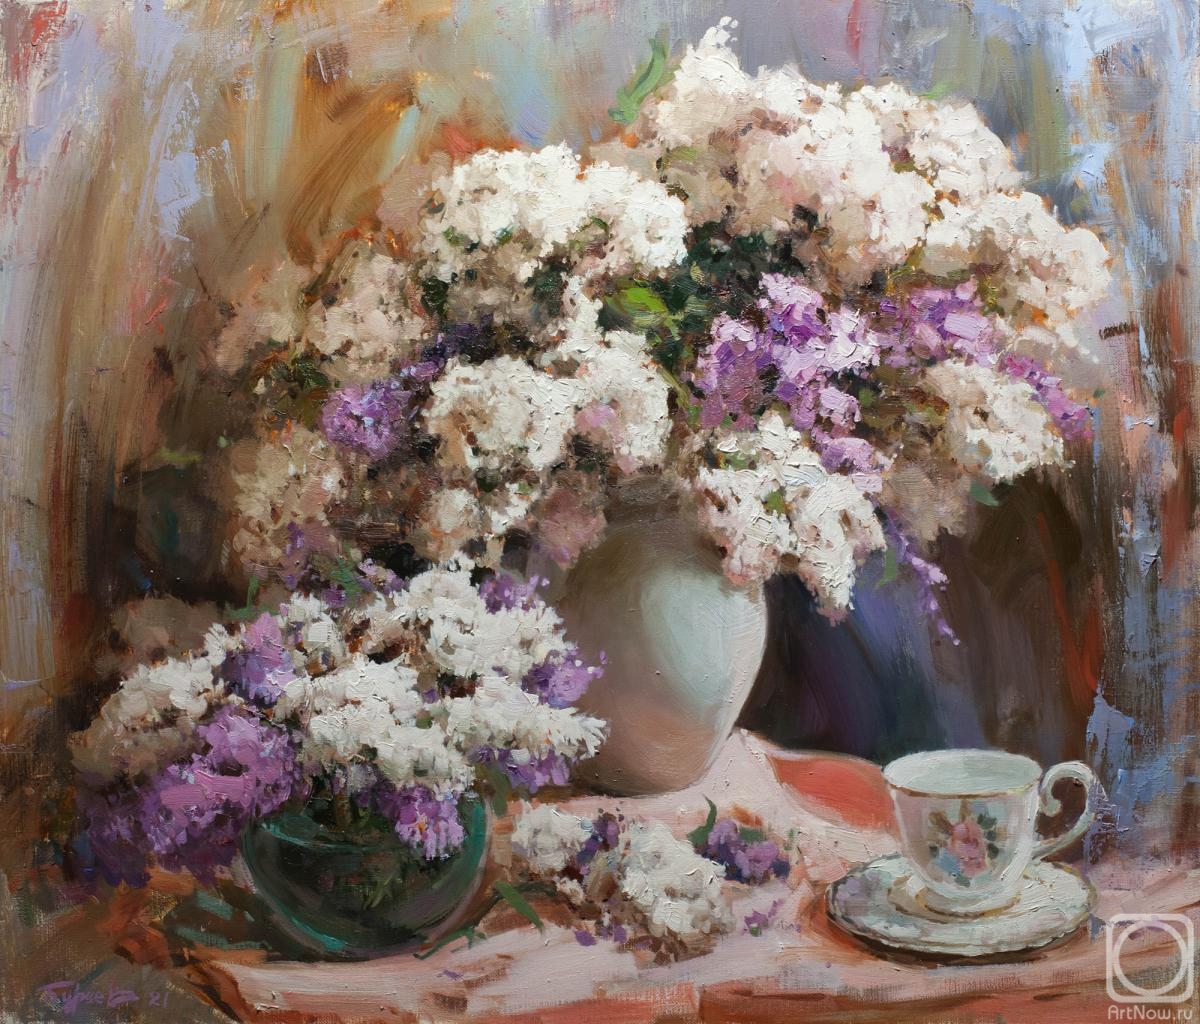 Burtsev Evgeny. Lilac fragrance